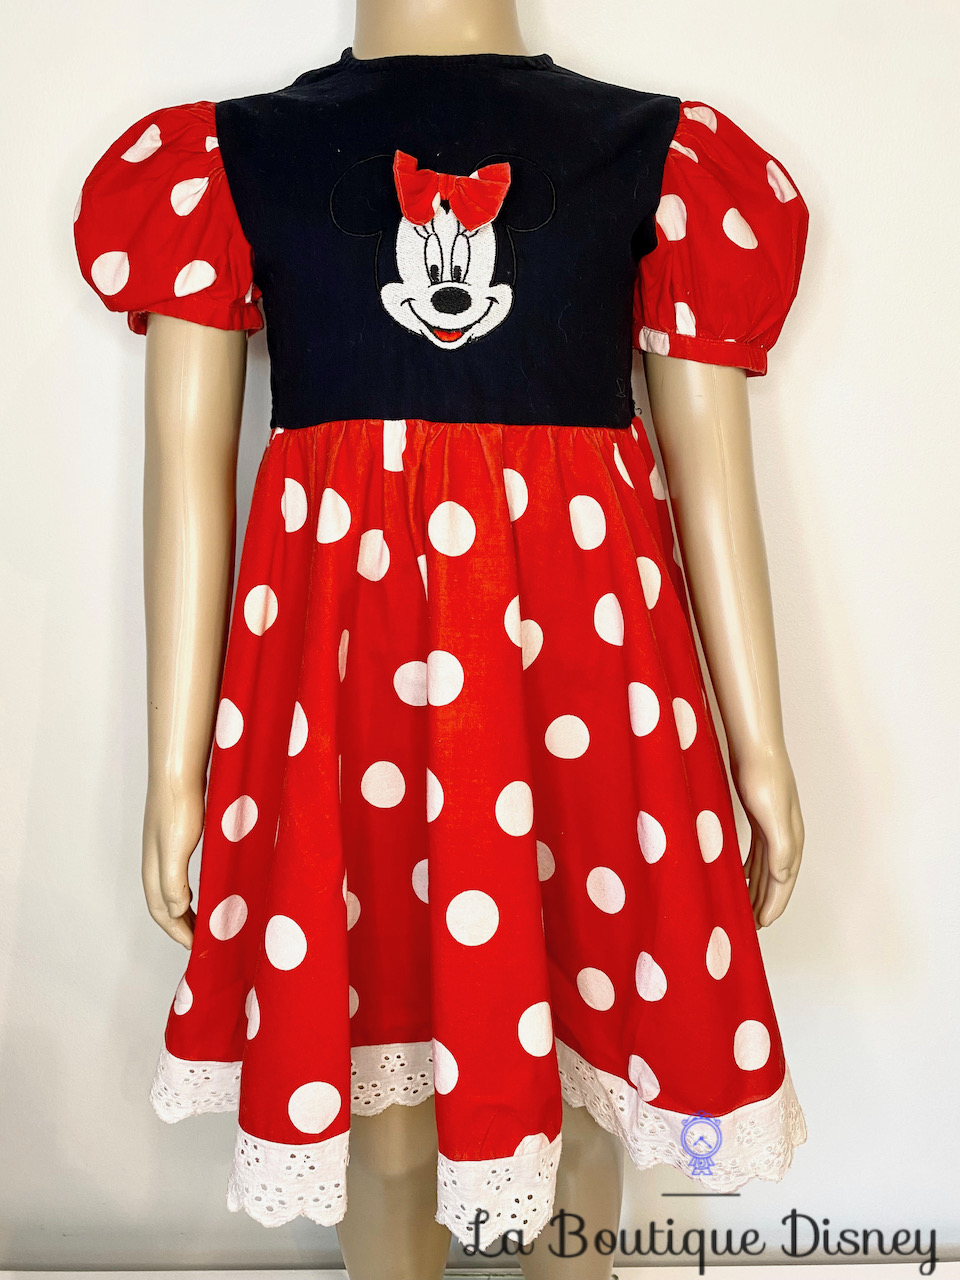 Déguisement Minnie Mouse Disneyland Paris Disney taille 2-3 ans robe  vintage noir rouge pois